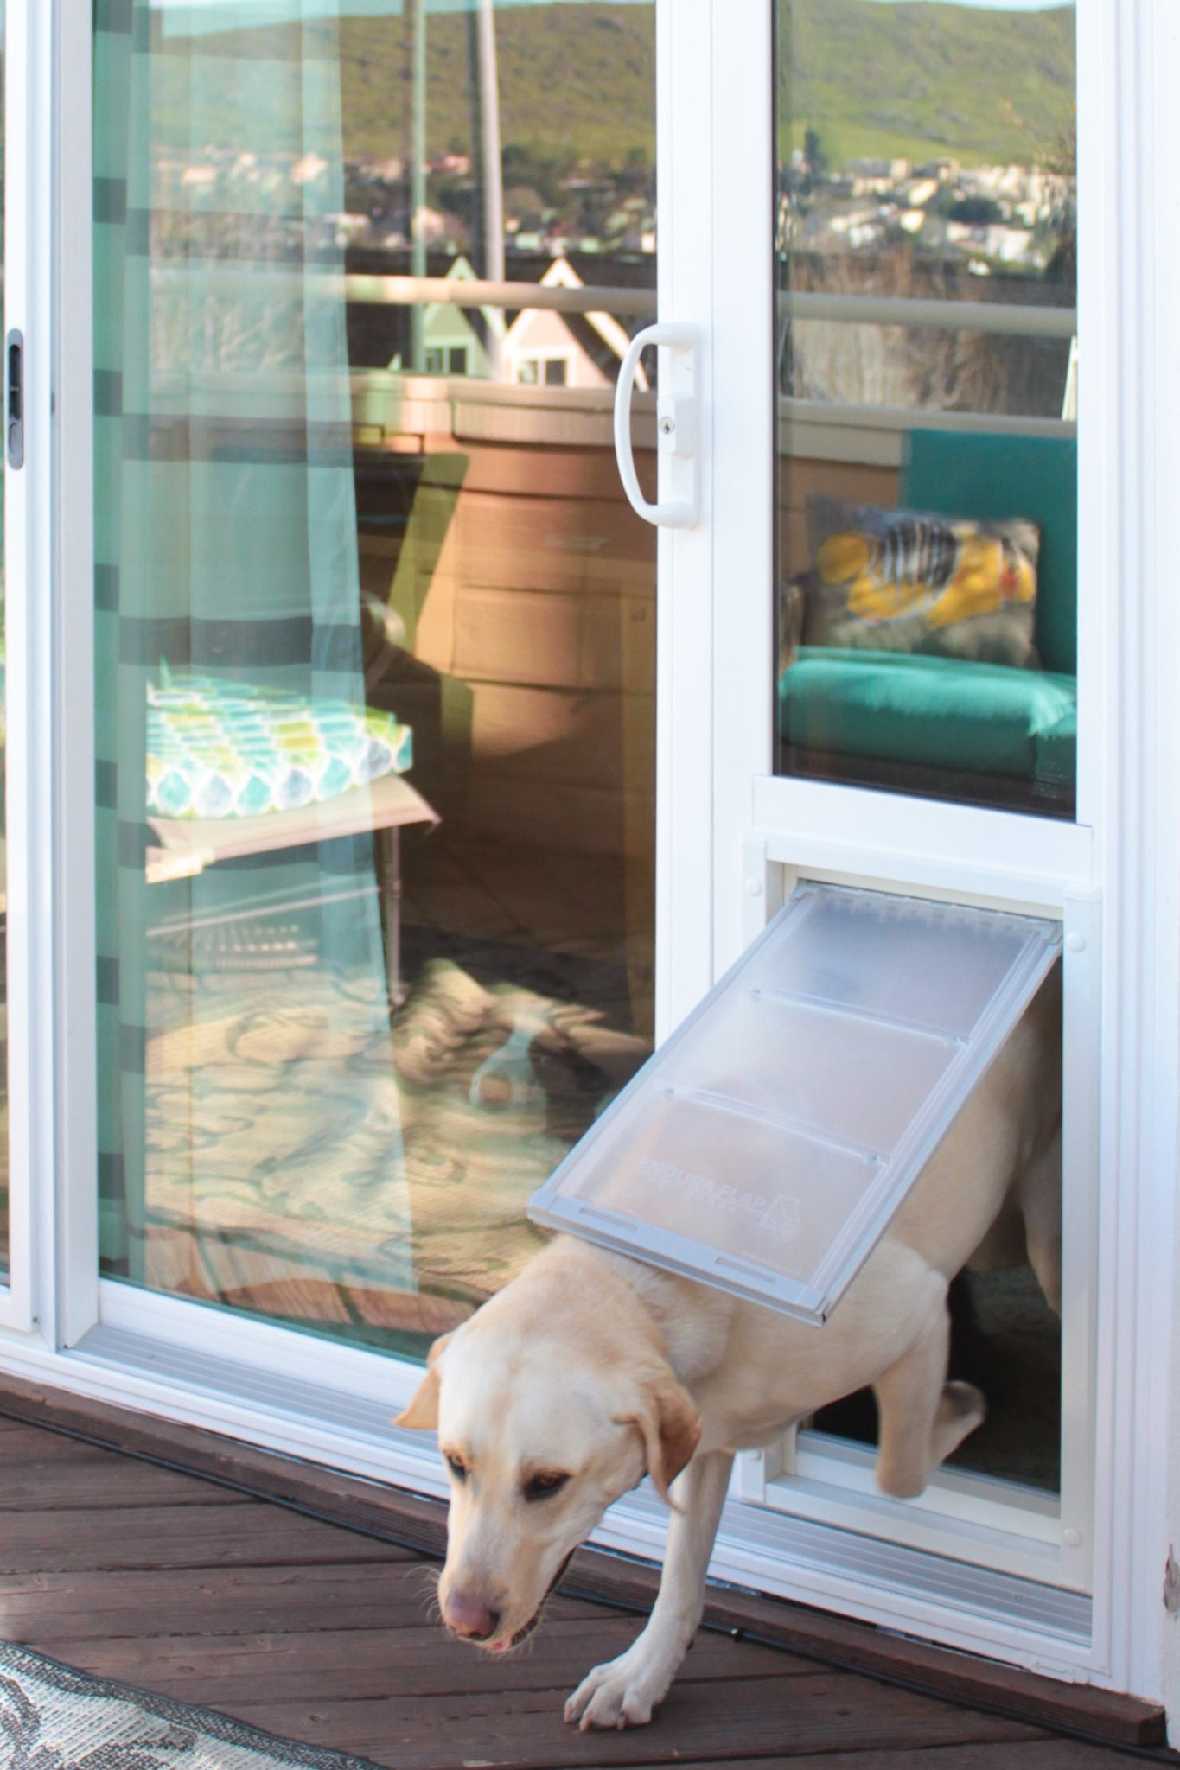 Best Dog Door for Sliding Glass Doors - Locking Pet Dog Door for Glass